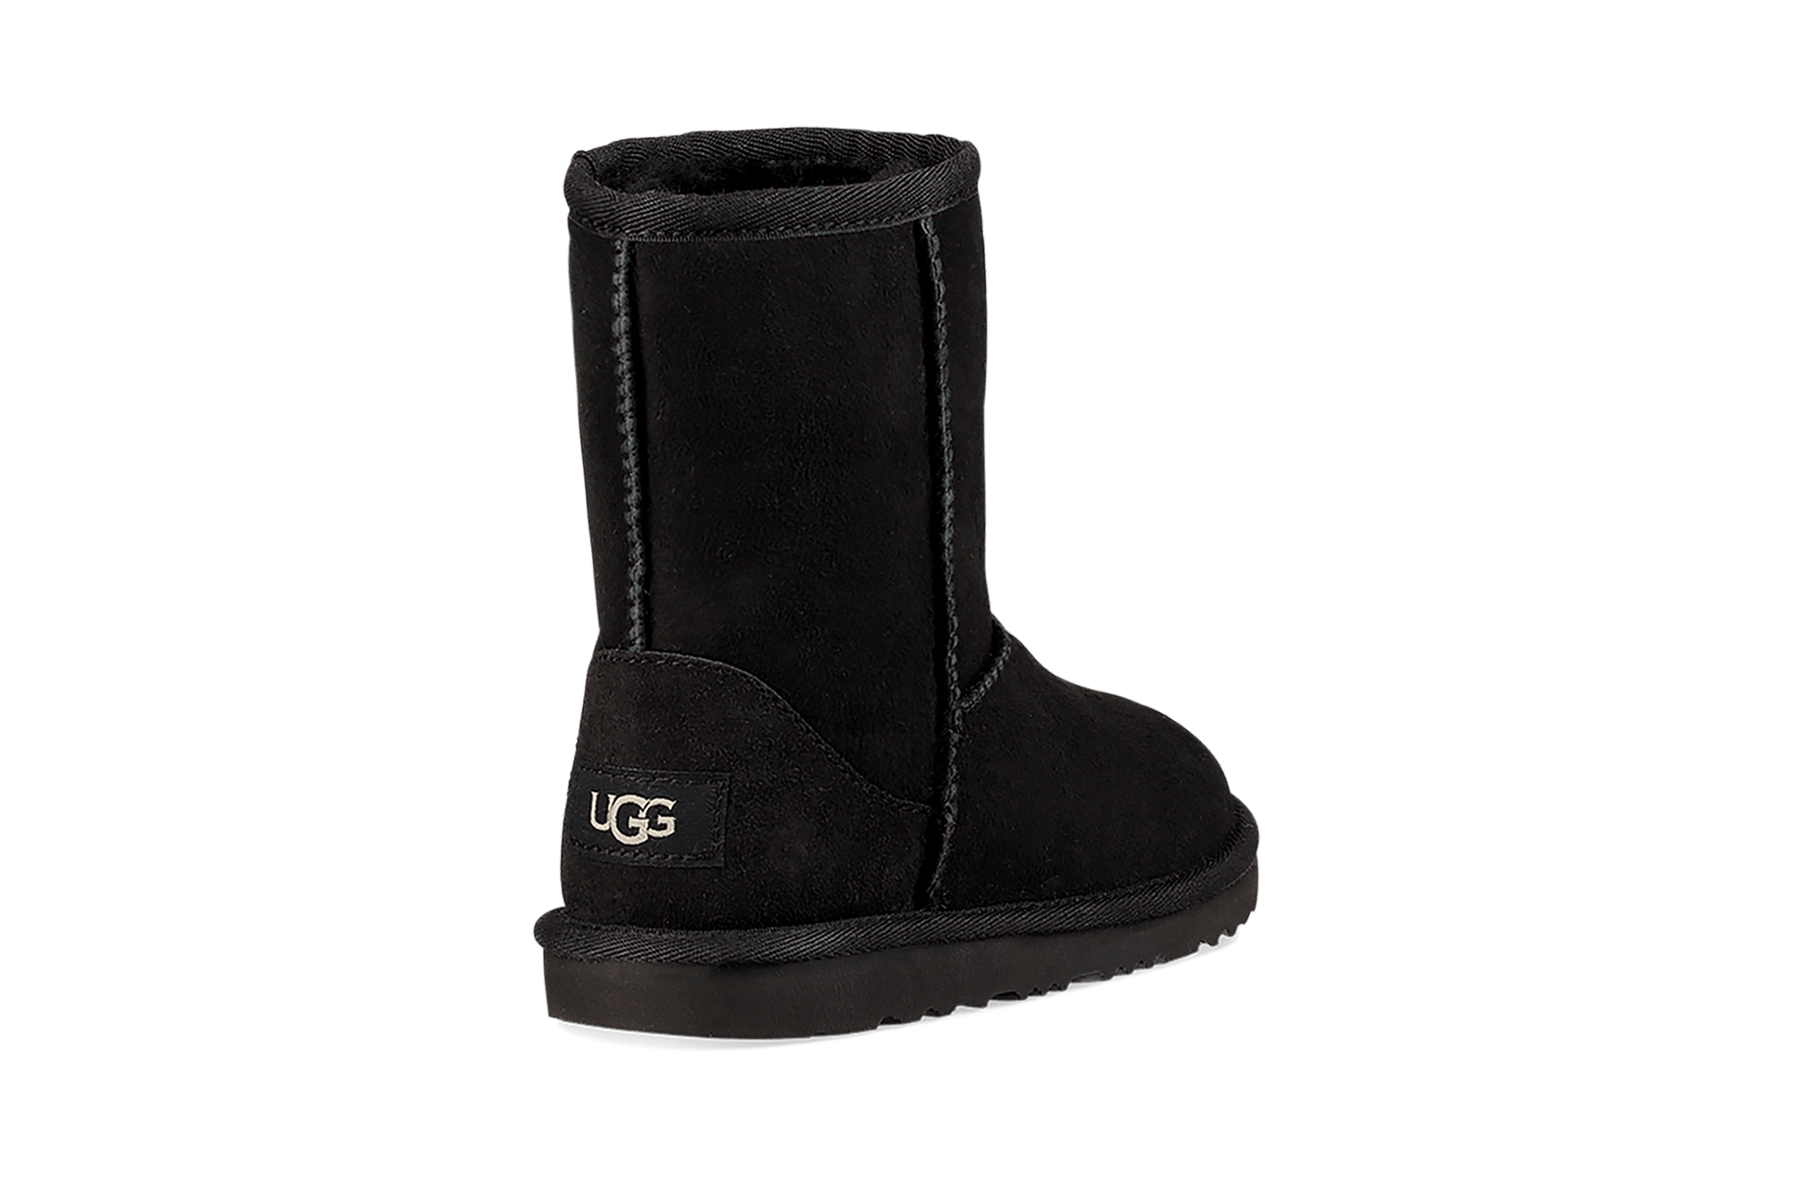 UGG FOOTWEAR UGG Classic Short II Boots - Kid's